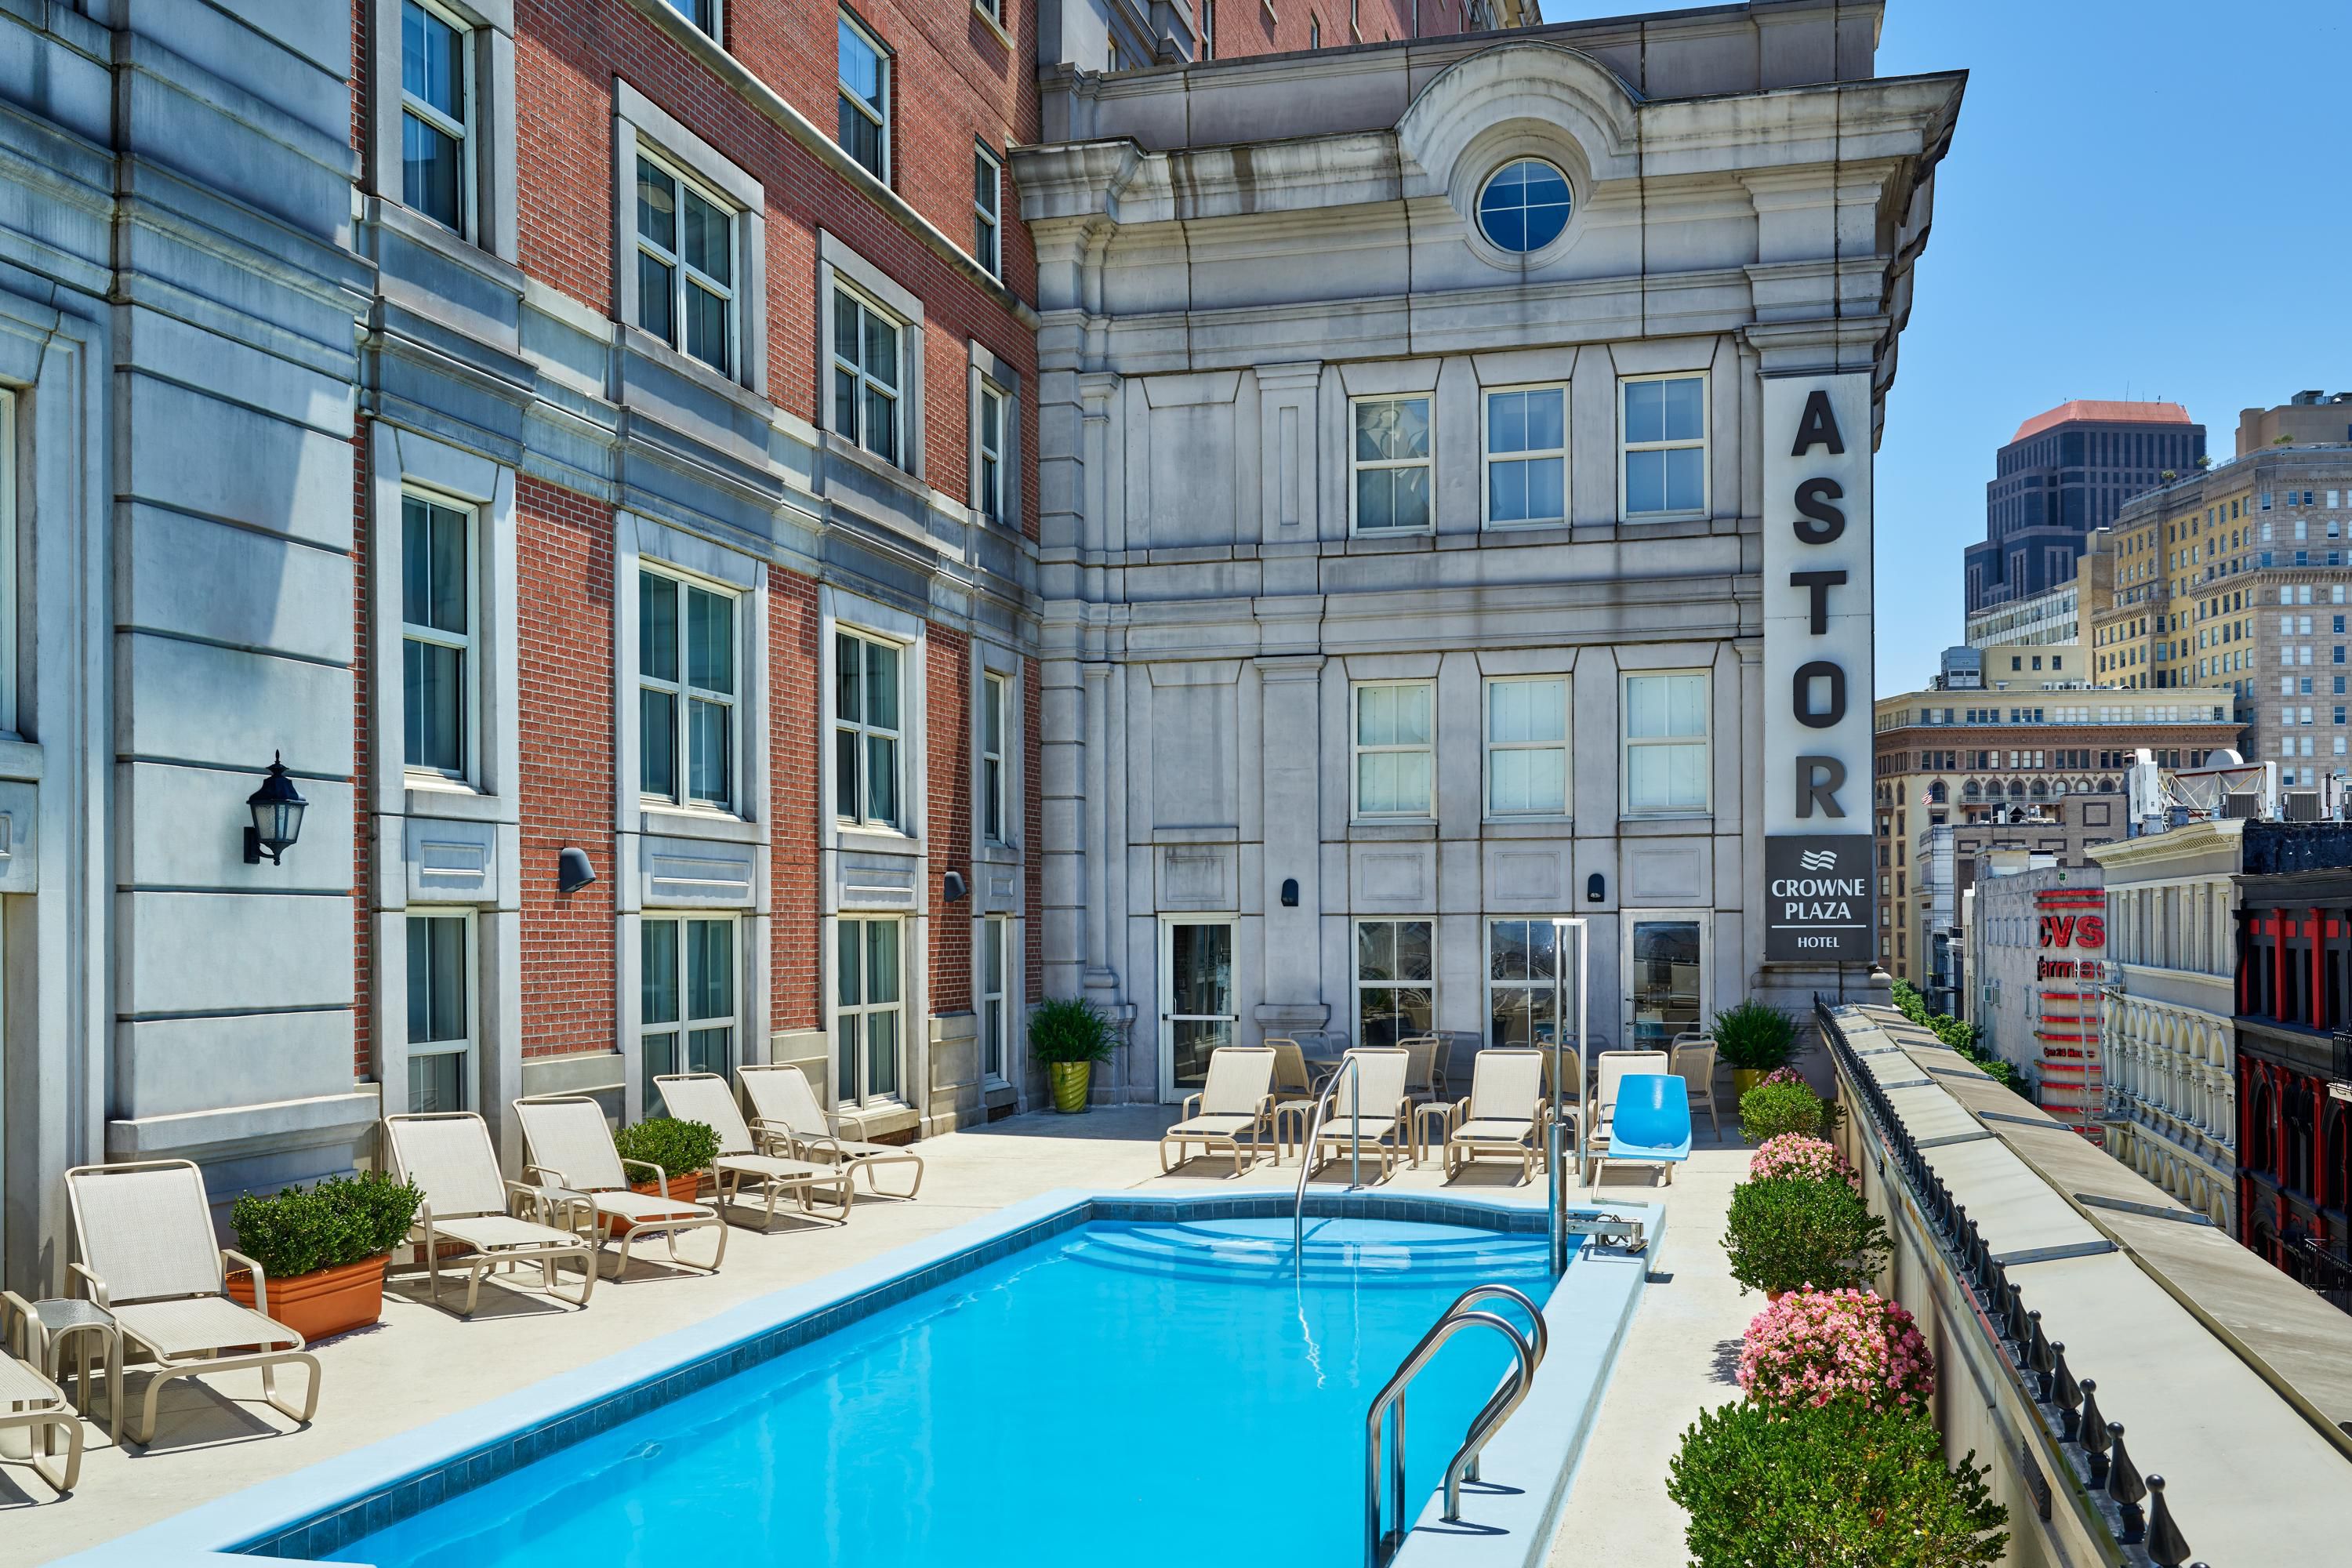 Hotel outdoor pool overlooking Bourbon Street.